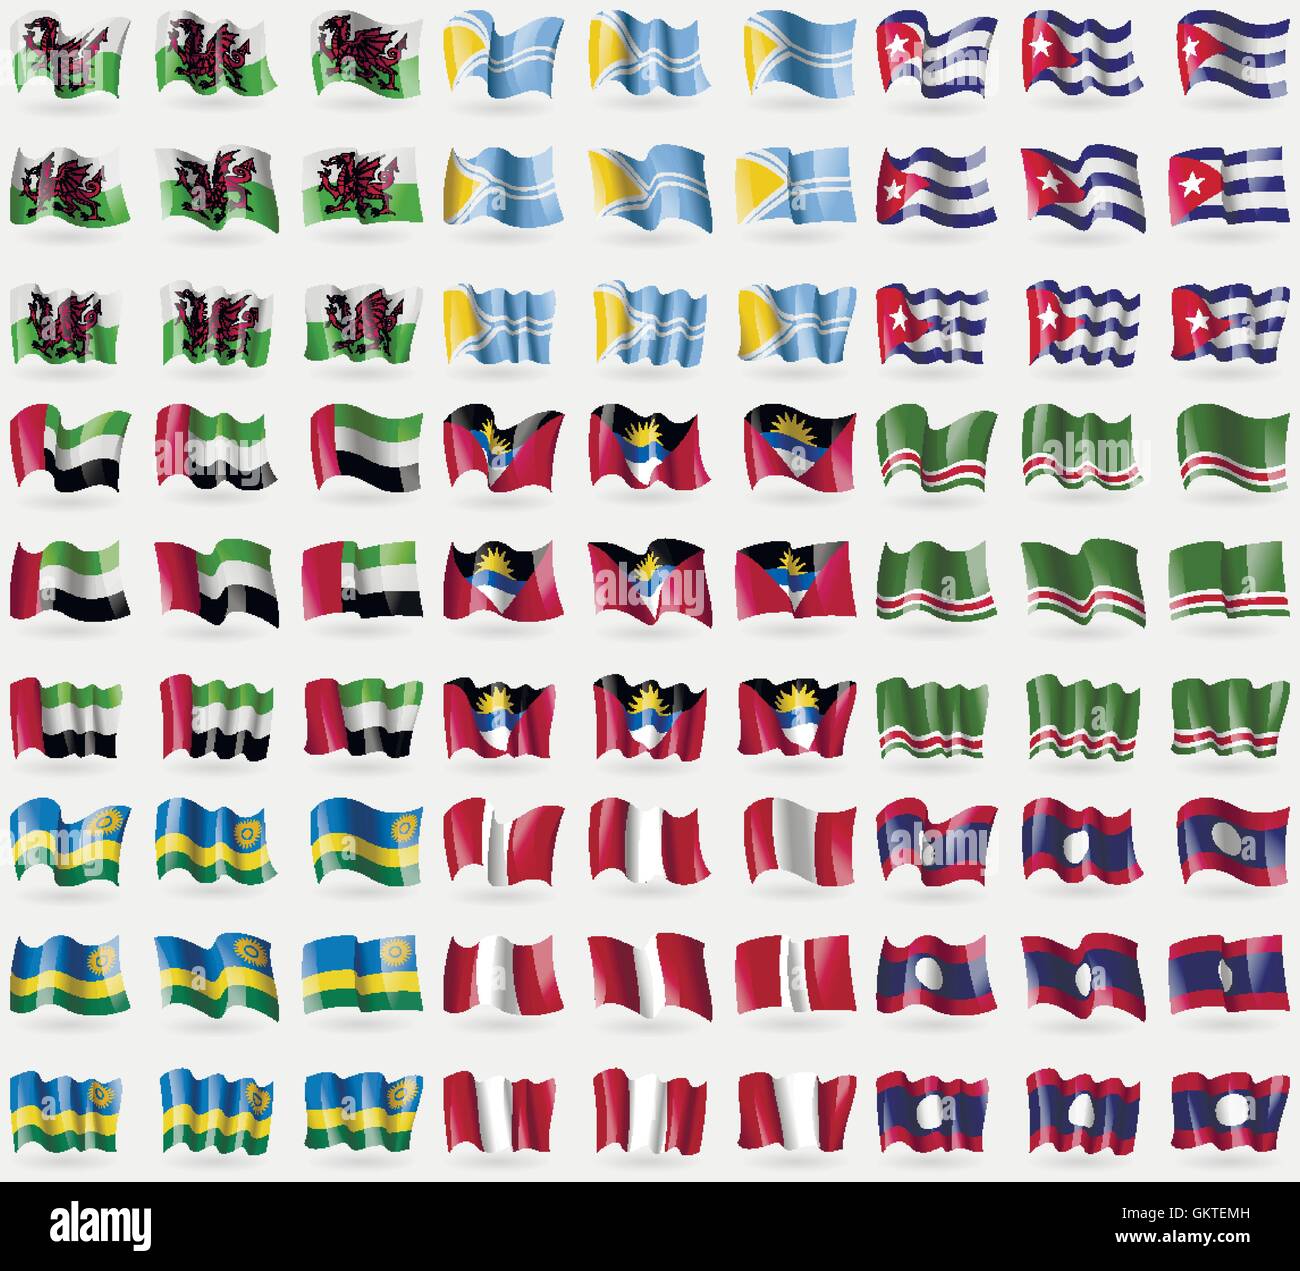 Il Galles, Tuva, Cuba, Emirati arabi uniti, Antigua e Barbuda, la Repubblica cecena di Ichkeria, Ruanda, Perù, Laos. Grande set di 81 bandiere. Vettore Illustrazione Vettoriale